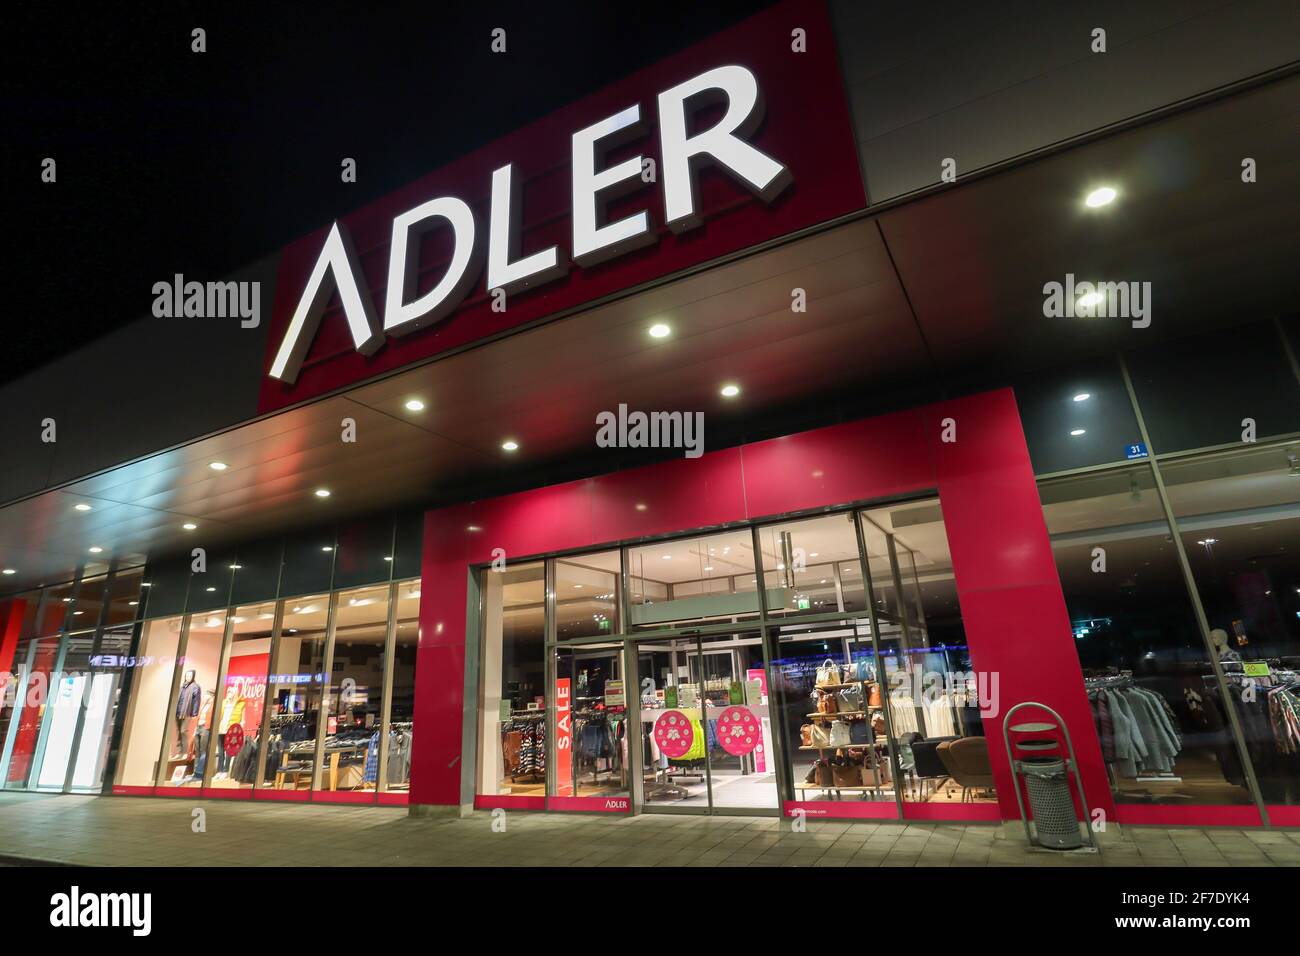 MONACO BAVIERA GERMANIA - GEN 13: Vetrina del negozio di moda Adler, richiesta di insolvenza a causa di arresto dovuto Coronavirus pandemia a Monaco, in tedesco Foto Stock